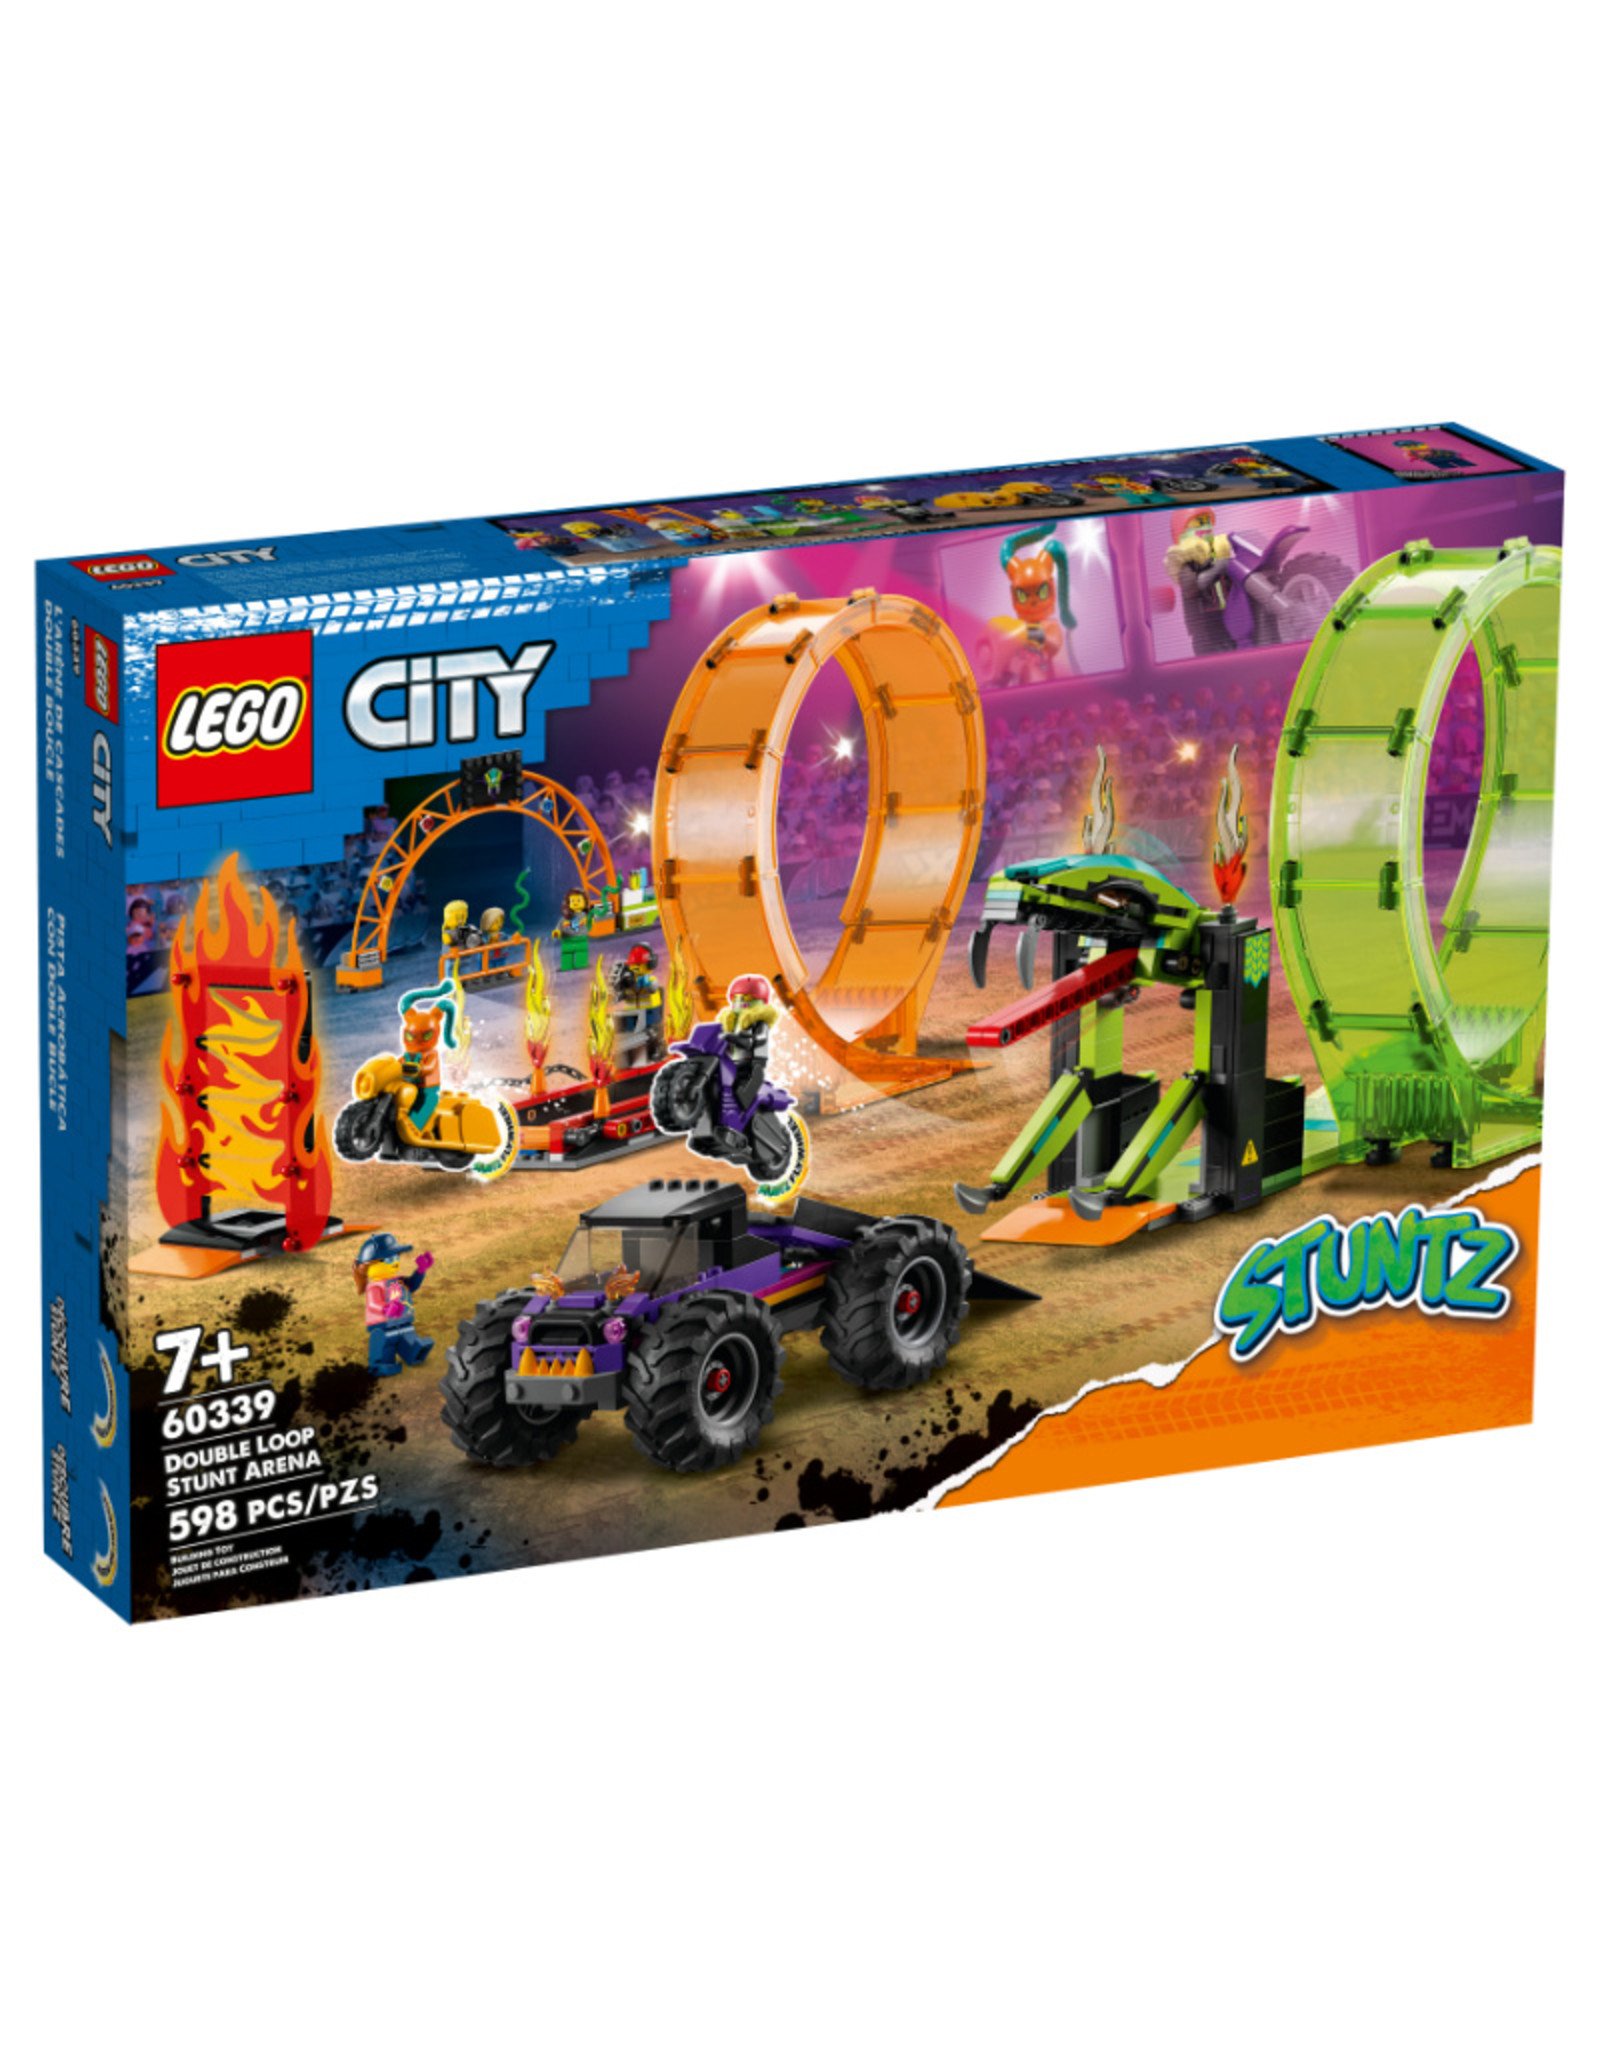 LEGO City Stuntz  Double Loop Stunt Arena 60339